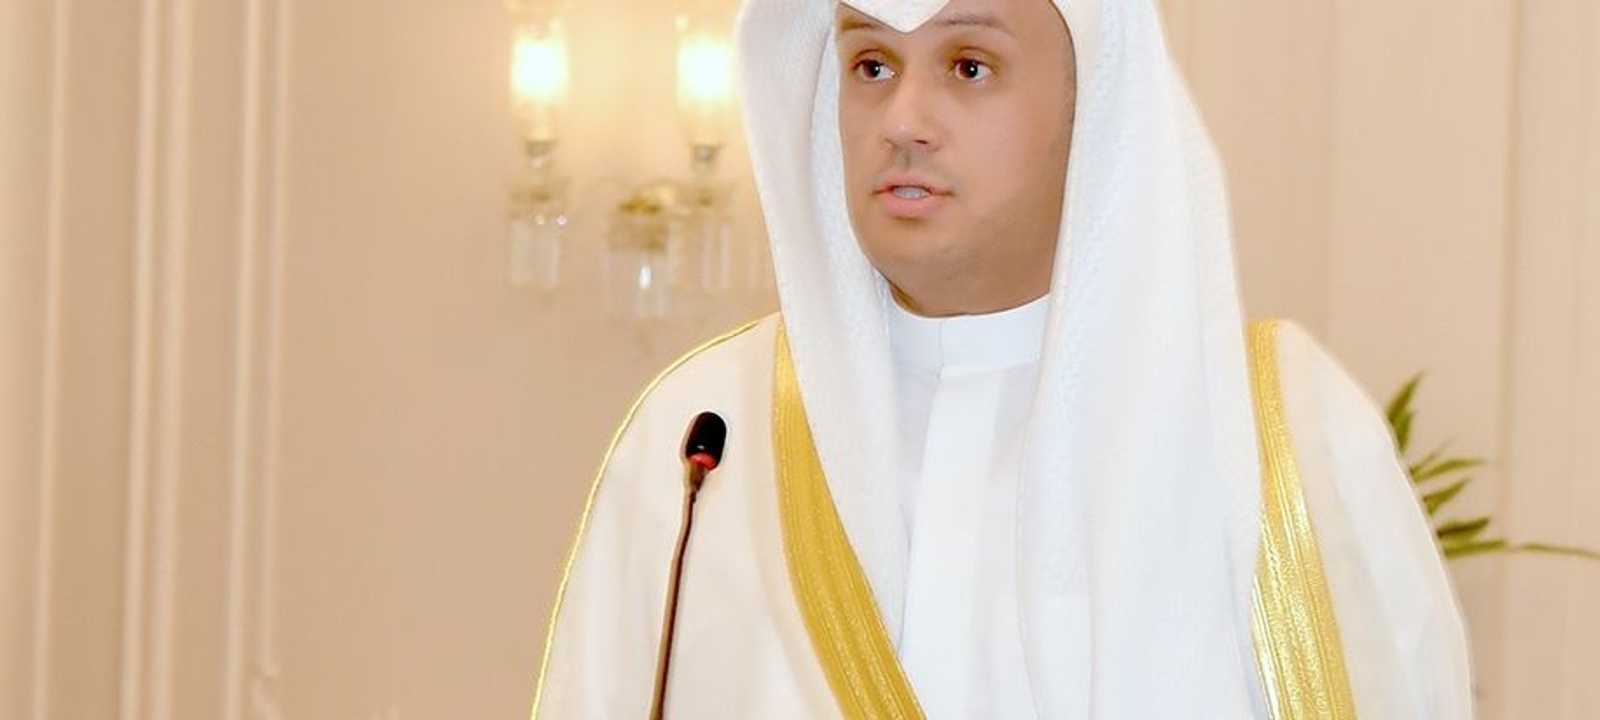 وزير المالية الكويتي الجديد فهد الجارالله